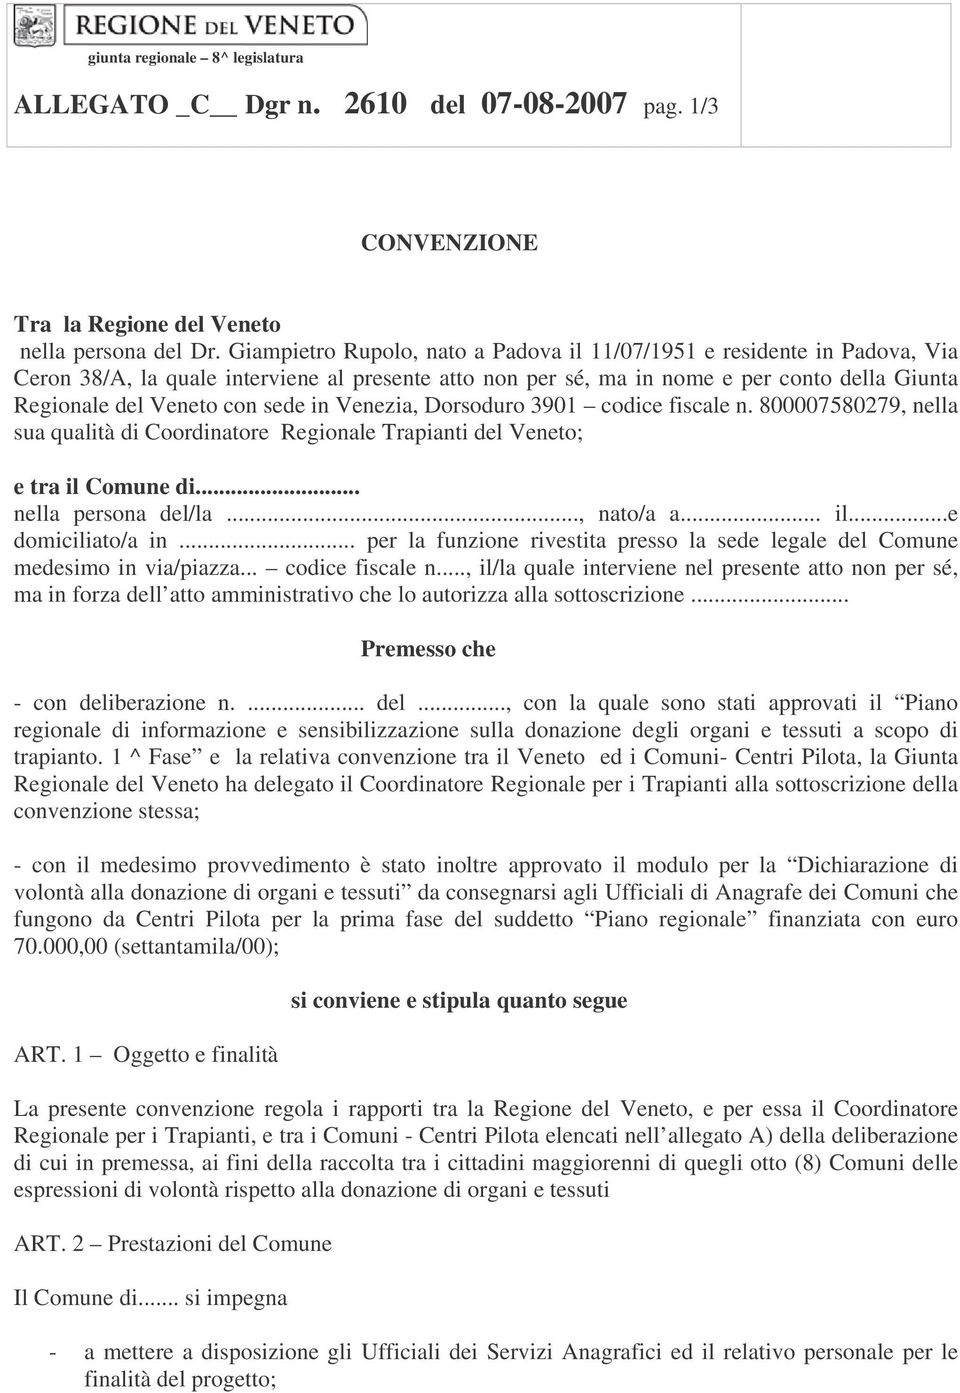 sede in Venezia, Dorsoduro 3901 codice fiscale n. 800007580279, nella sua qualità di Coordinatore Regionale Trapianti del Veneto; e tra il Comune di... nella persona del/la..., nato/a a... il...e domiciliato/a in.